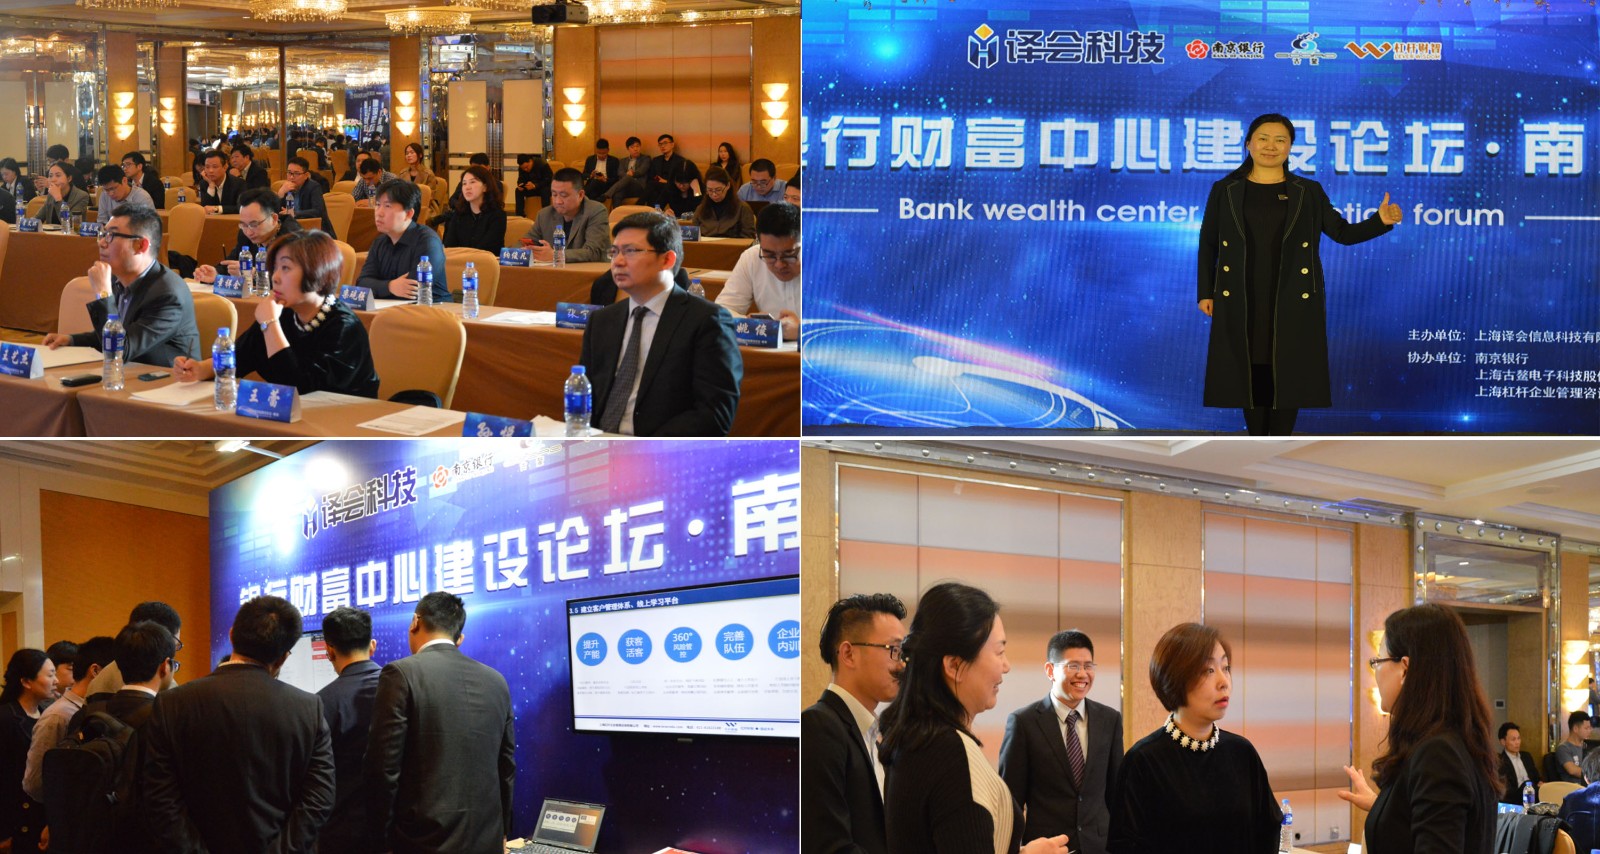 上海杠杆企业管理咨询有限公司携手战略合作伙伴 成功举办《银行财富中心建设论坛·南京》